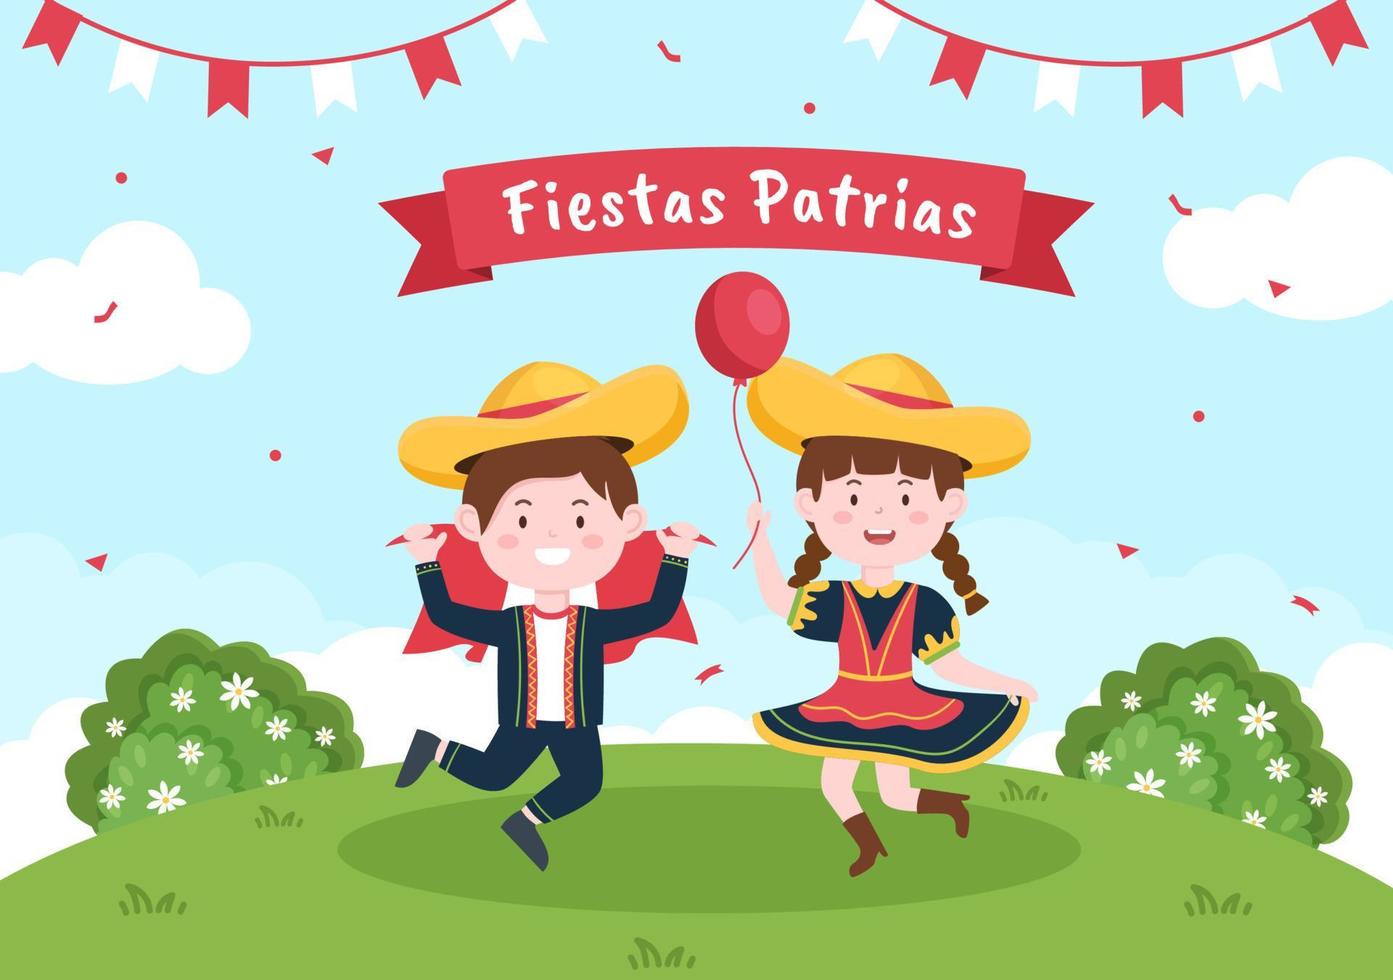 felices fiestas patrias o illustrazione del fumetto di festa dell'indipendenza peruviana con bandiera e persone carine per la festa nazionale del Perù celebrazione il 28 luglio in uno sfondo di stile piatto vettore